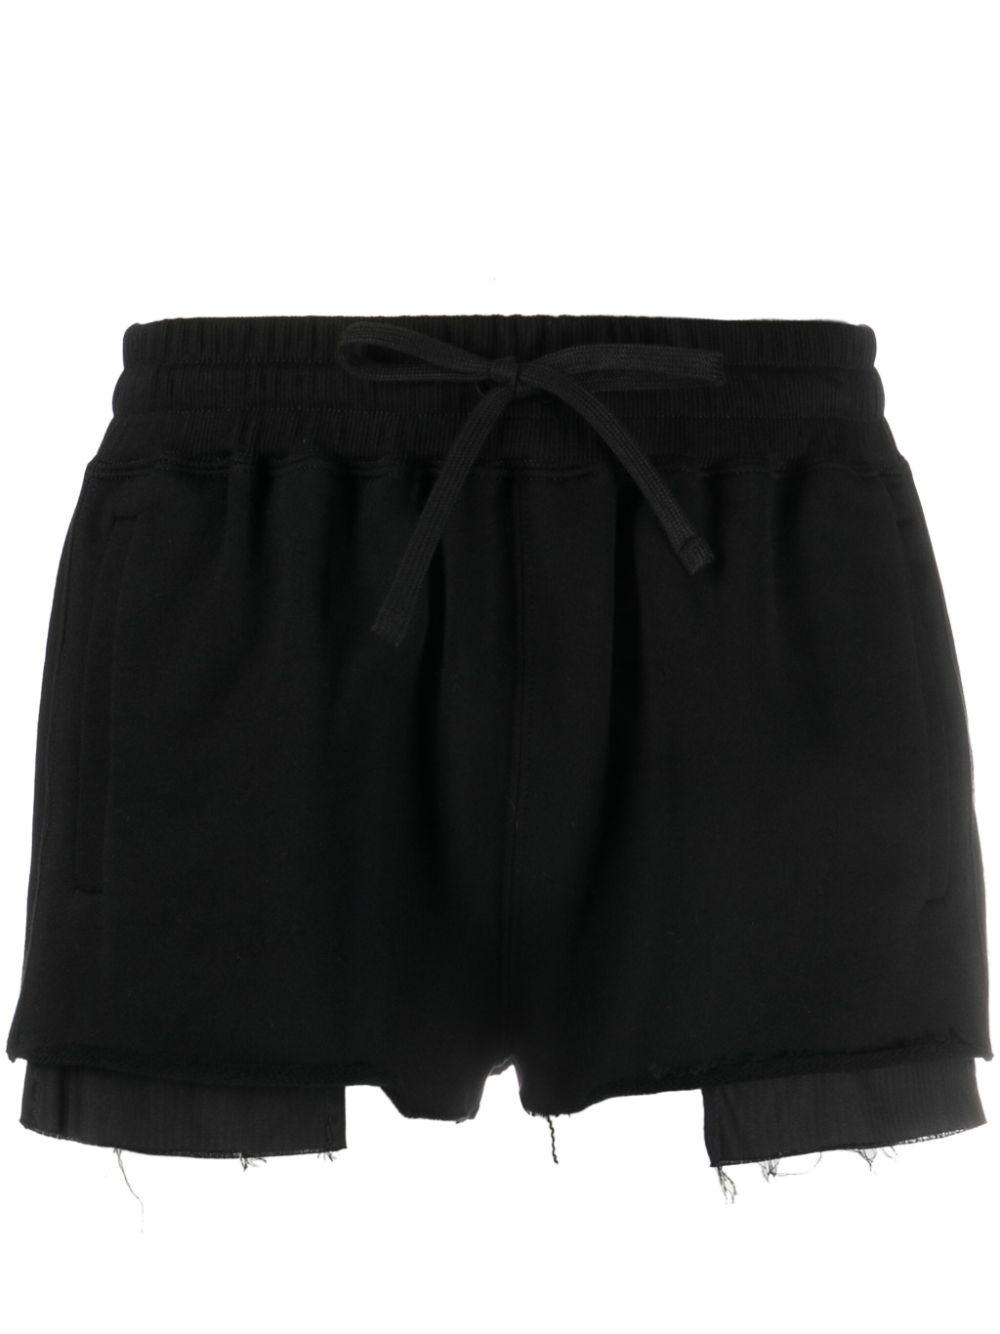 Shorts con cordones de Miu Miu de color Negro | Lyst